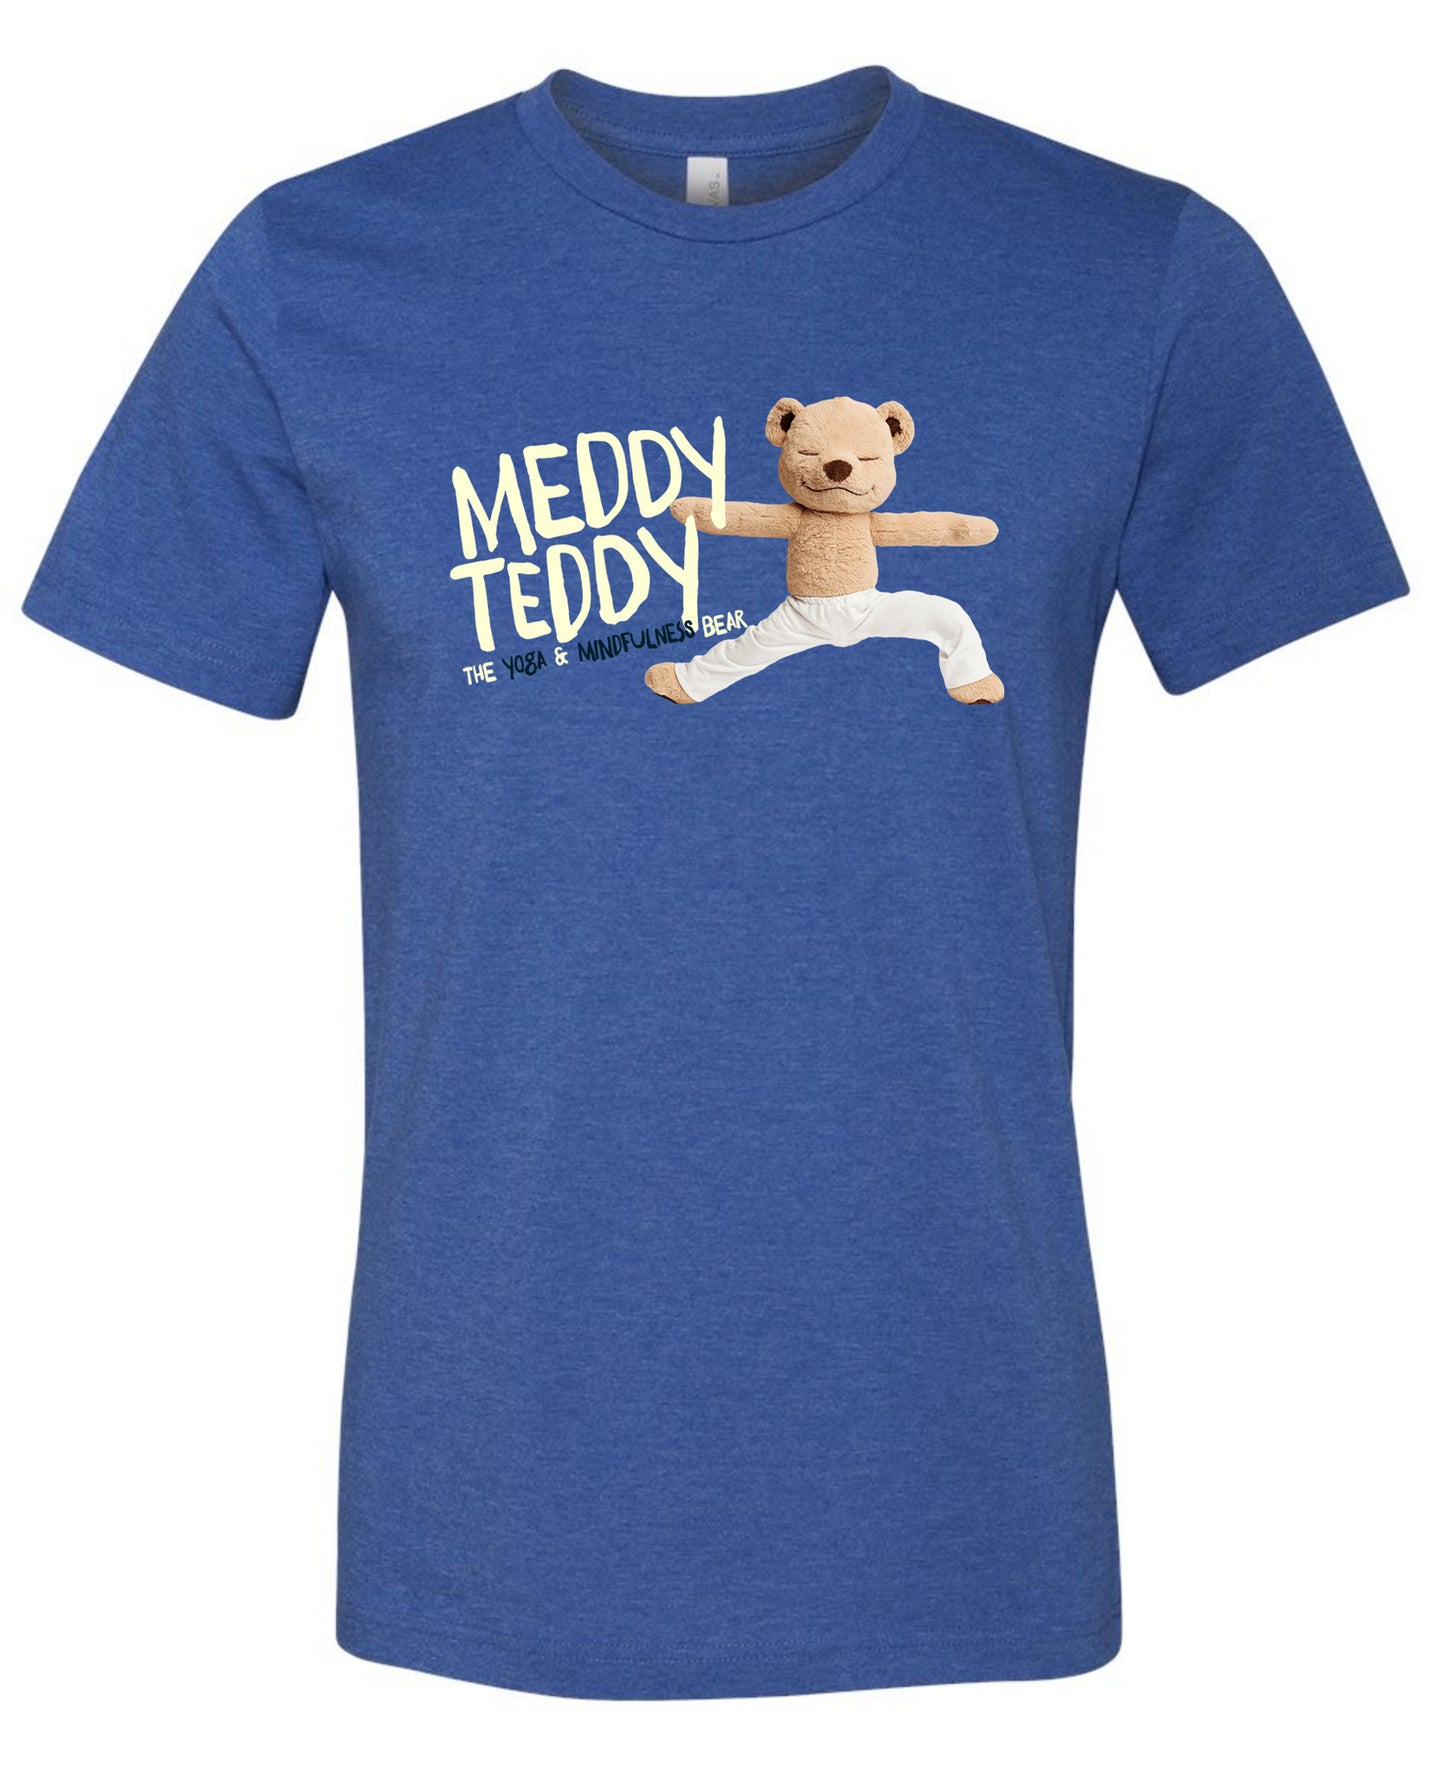 Meddy Teddy - Youth Tee (Blue)